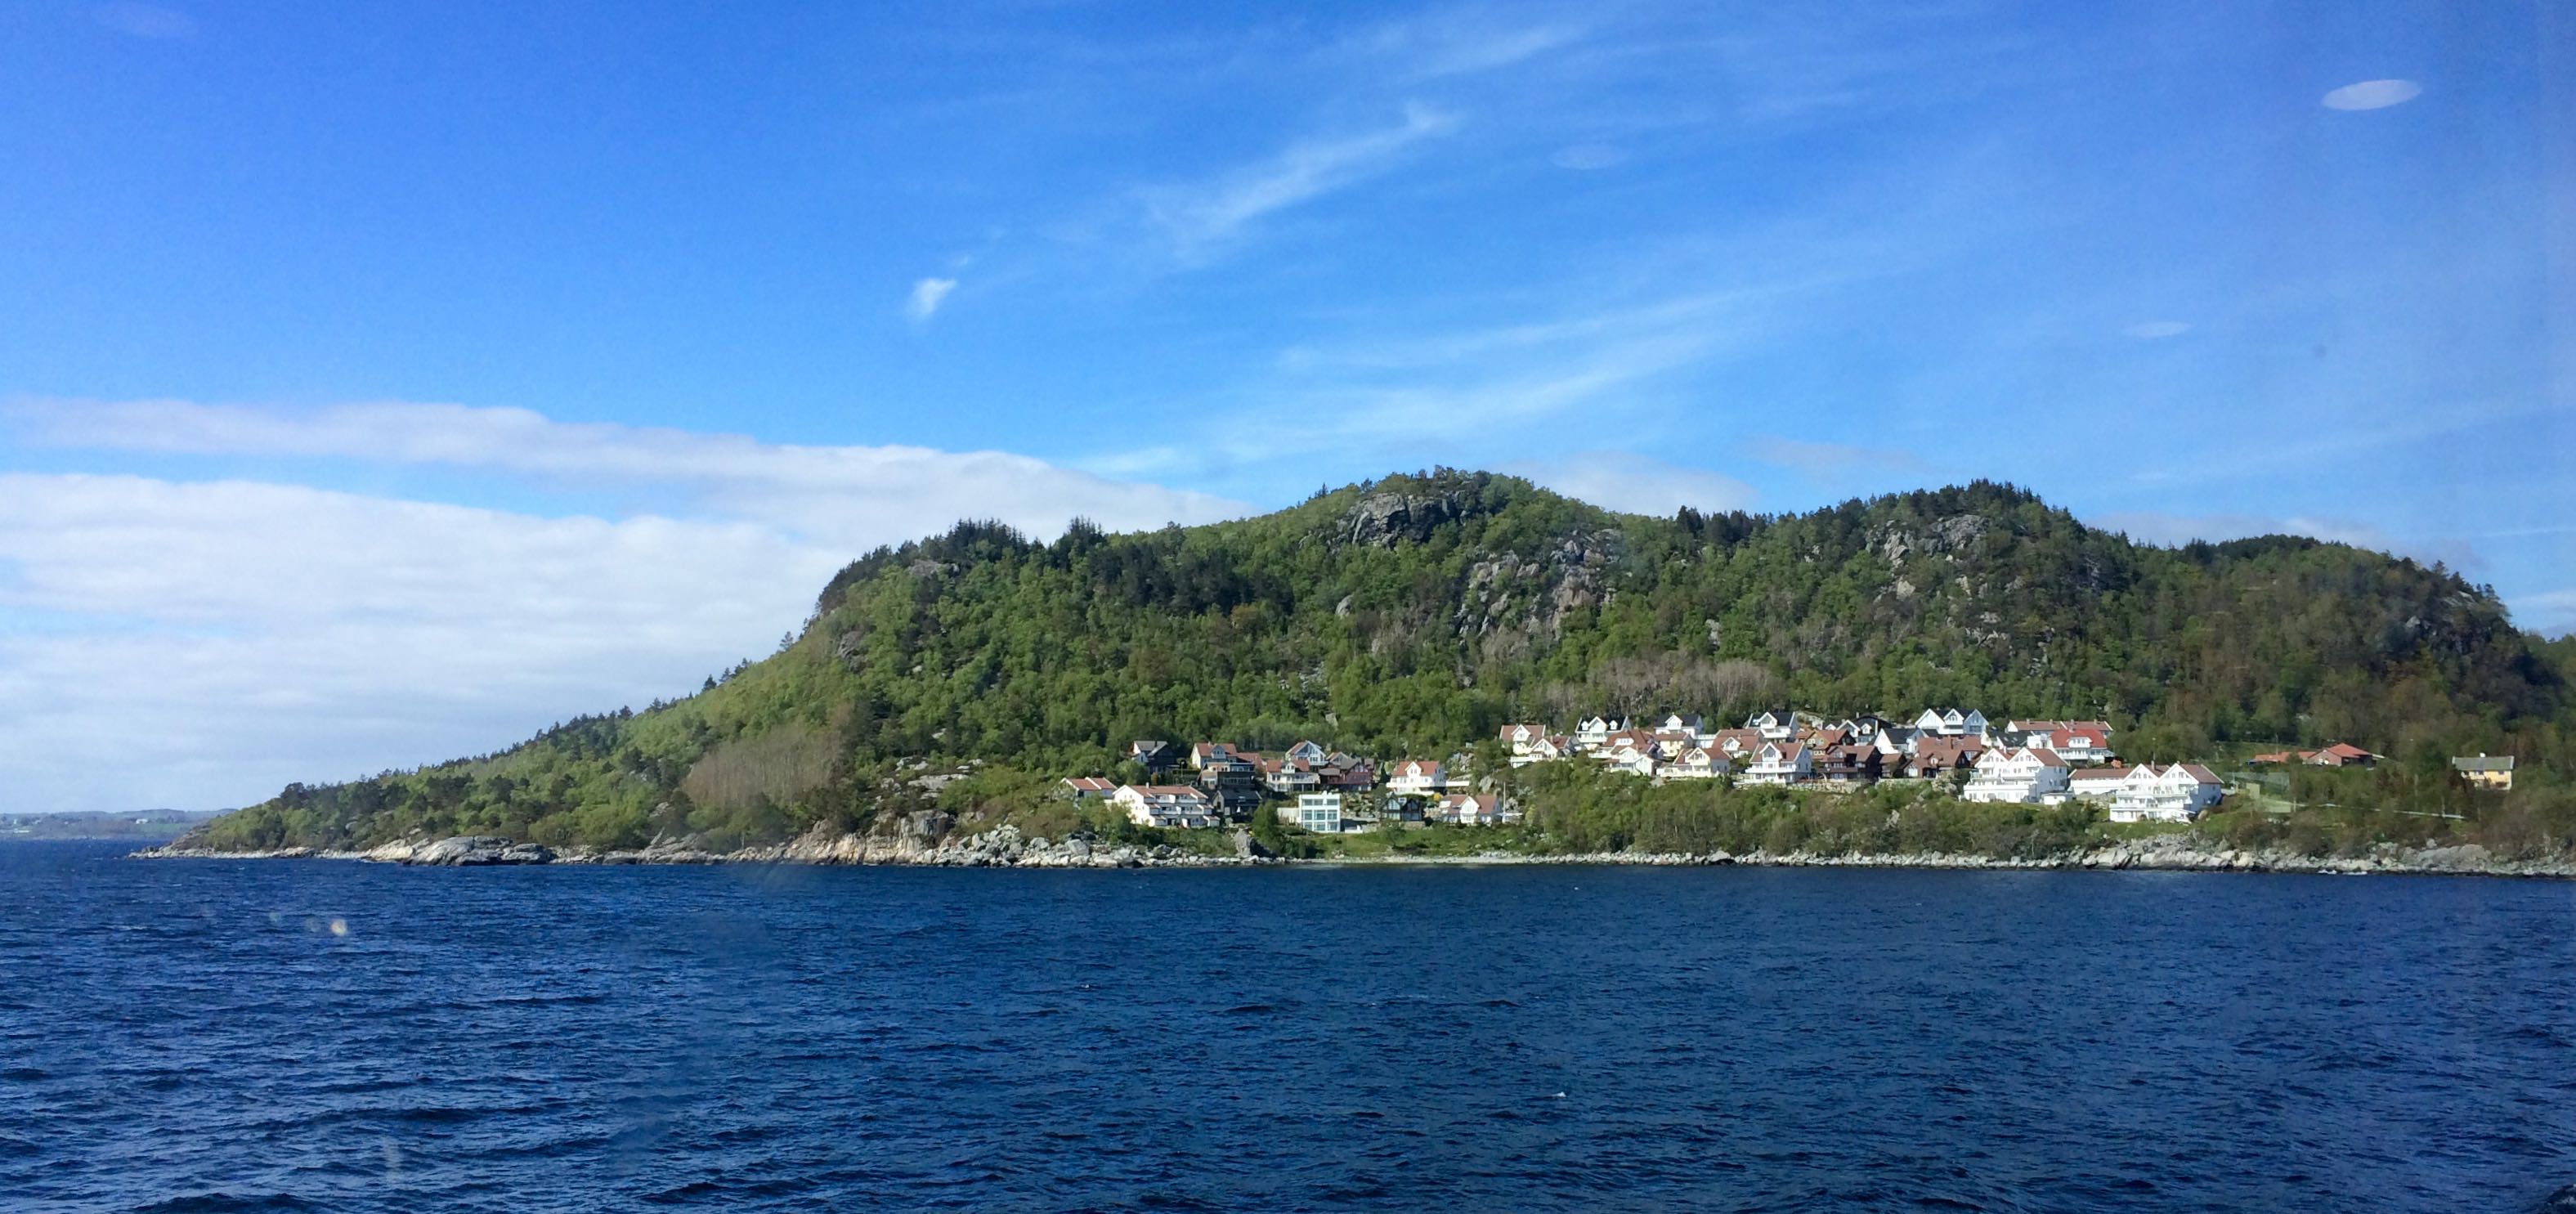 Tau, Norway